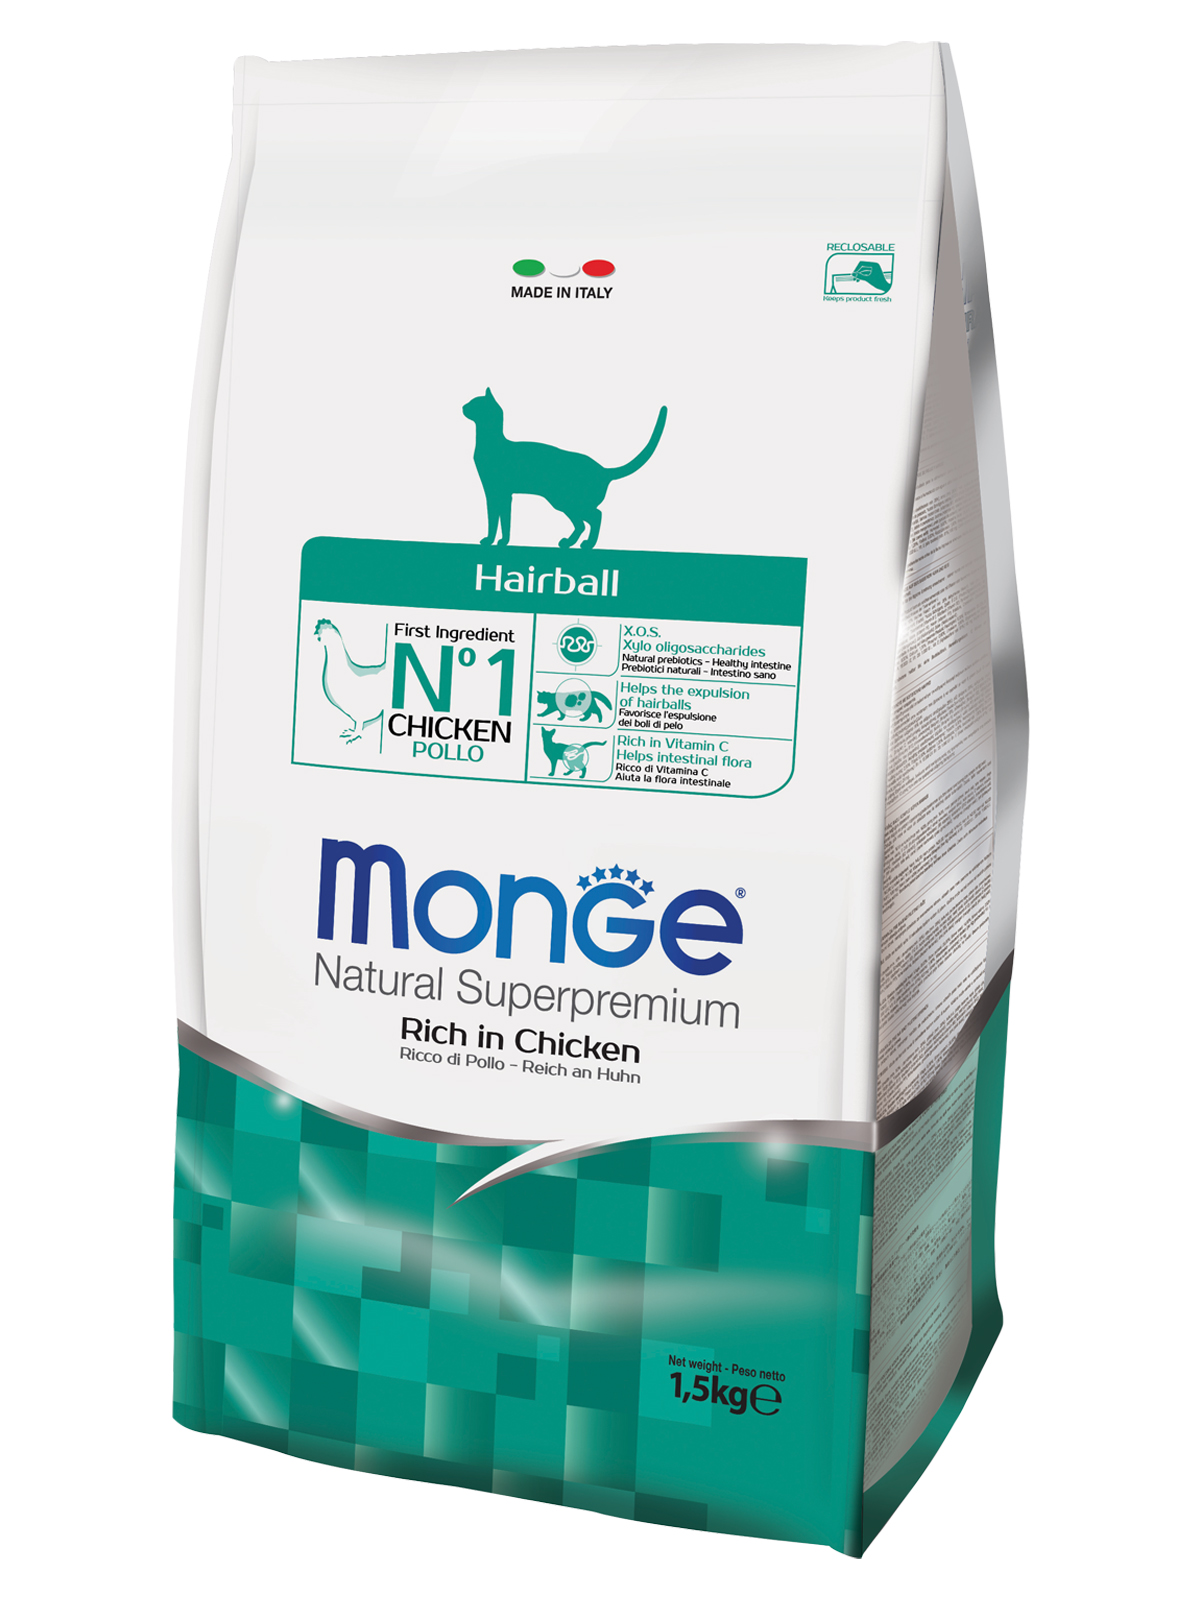 Купить корм монж для мелких собак. Monge Cat Sterilized. Monge Dog Medium корм для щенков средних пород 12 кг, шт.. Монж для щенков крупных пород 15 кг. Корм Monge 10 кг.